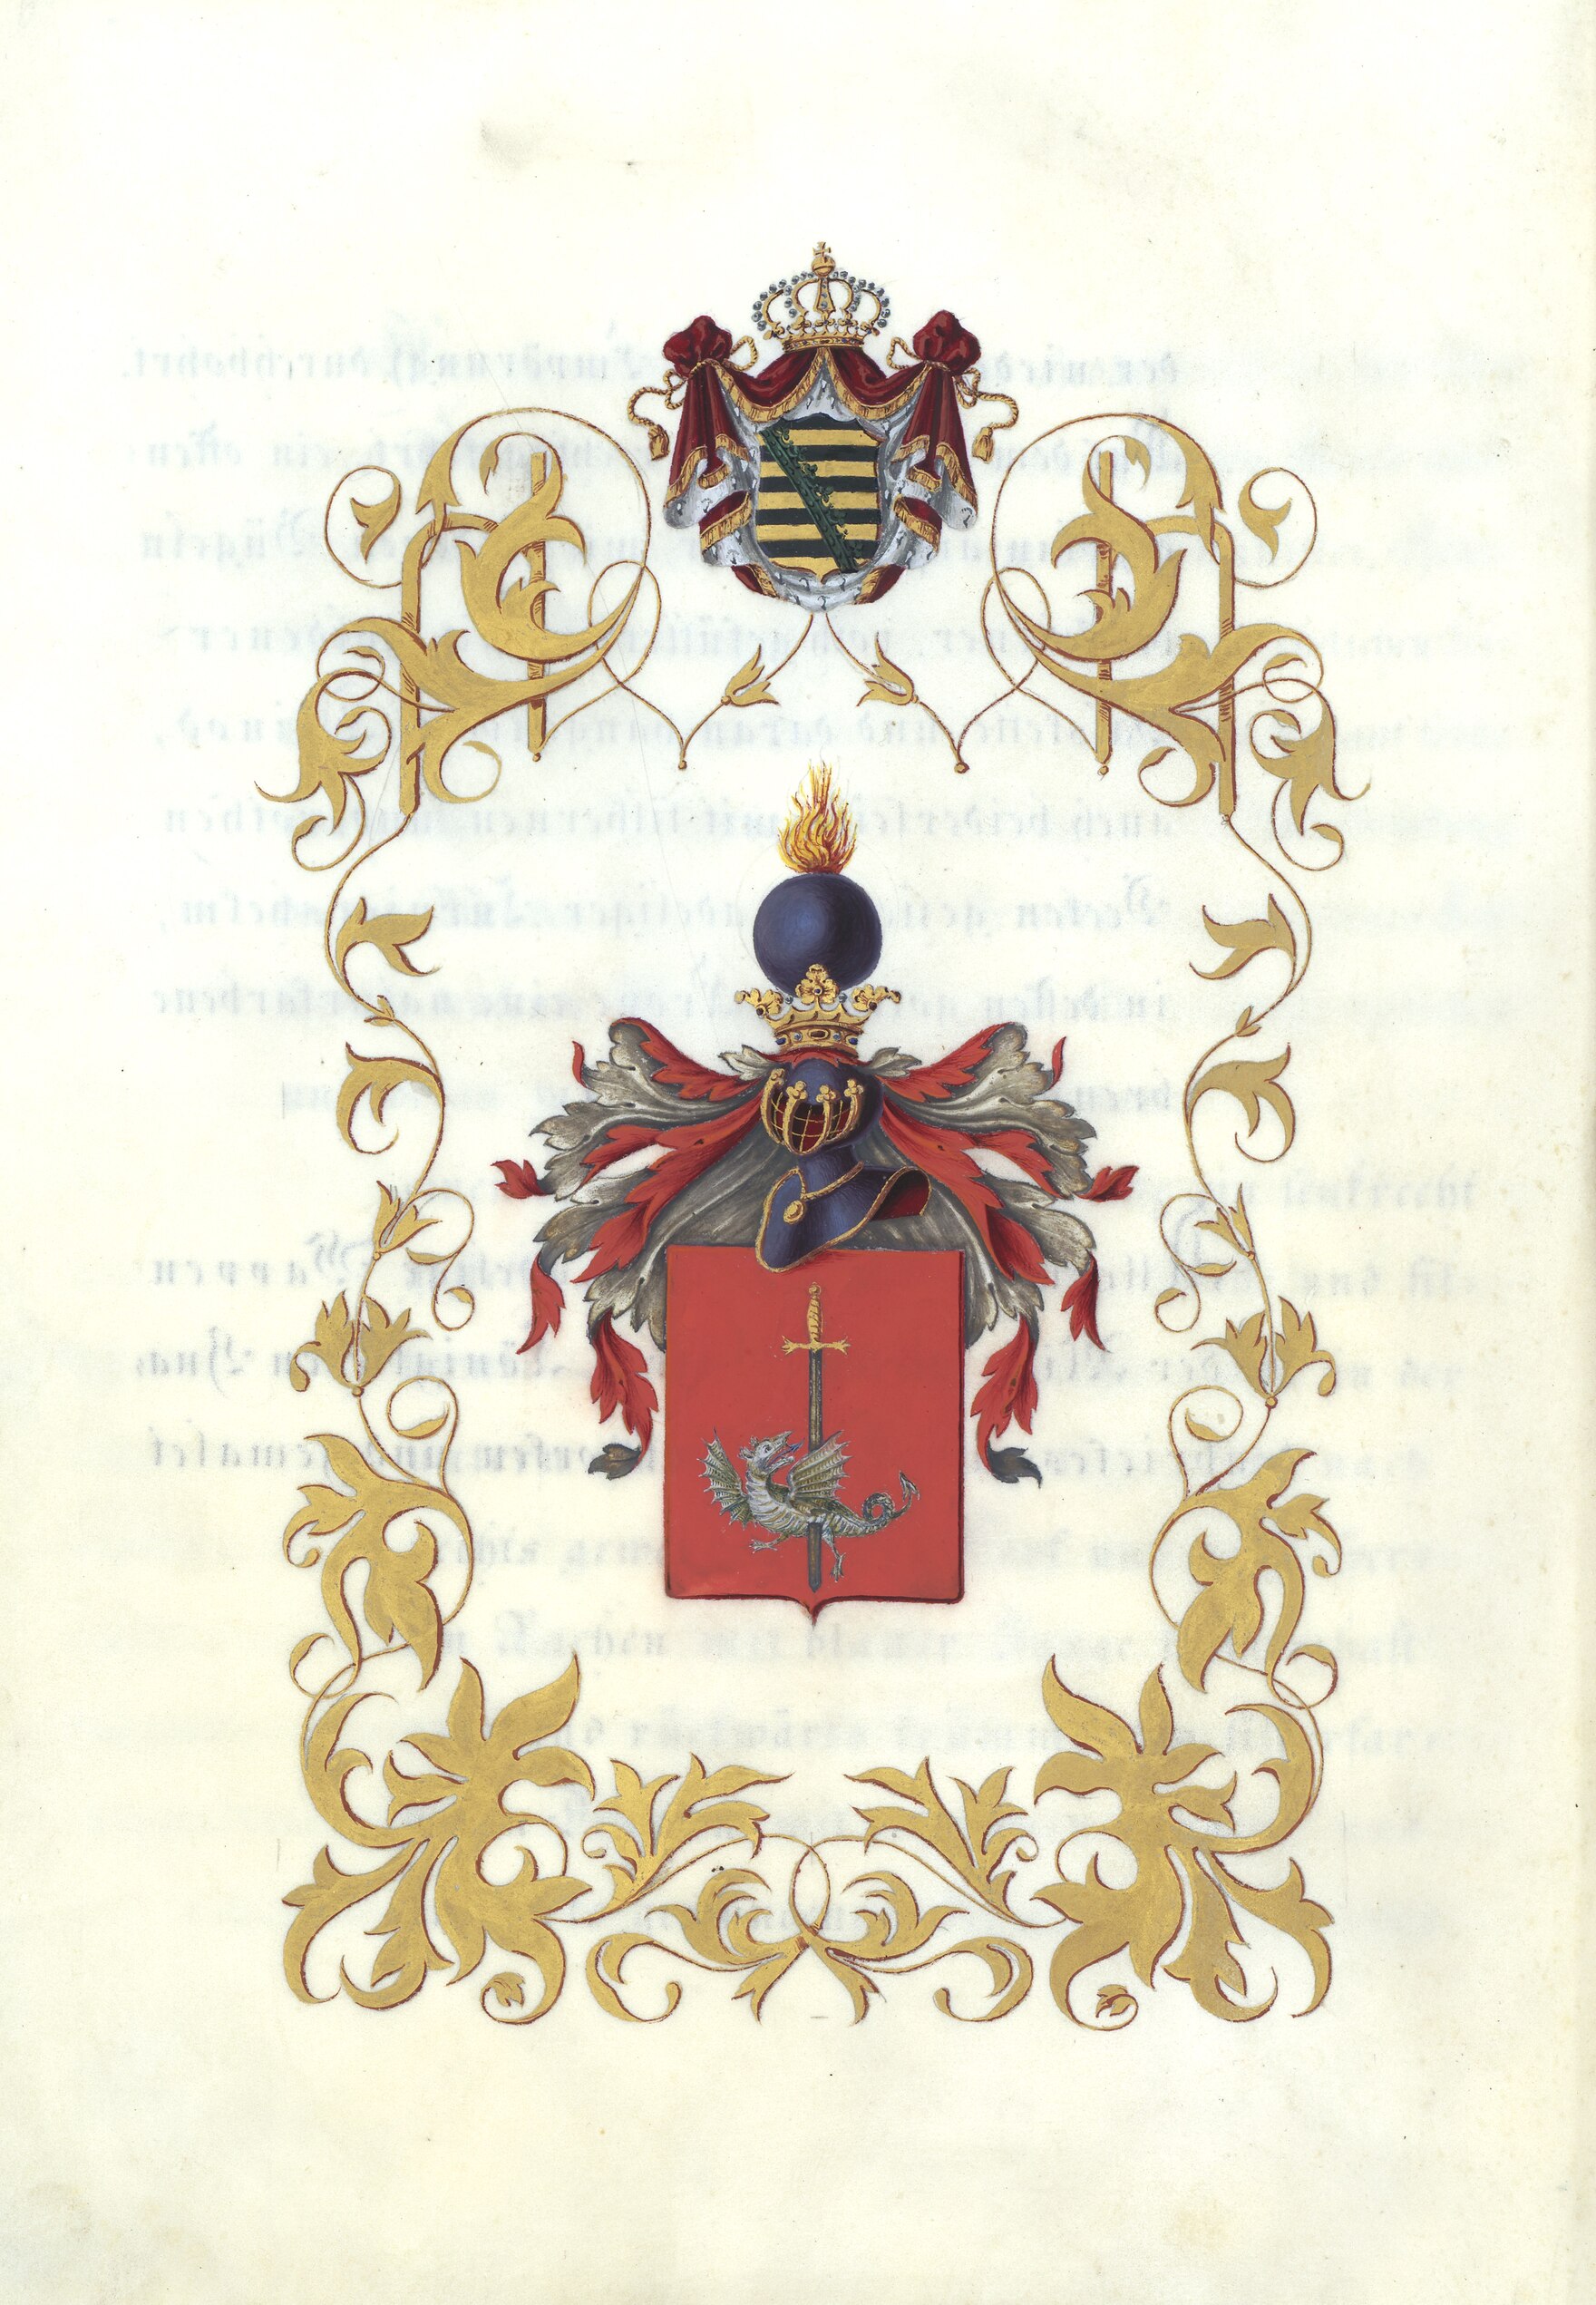 Wappen der Familie von Rabenhorst. Das Wappen zeigt ein rotes Schild, in dessen Mitte ein senkrecht gestelltes Schwert mit goldenem Griffe und silberner Klinge steht. Das Schwert durchbohrt einen in der unteren Hälfte des Schildes liegenden, nach rechts g